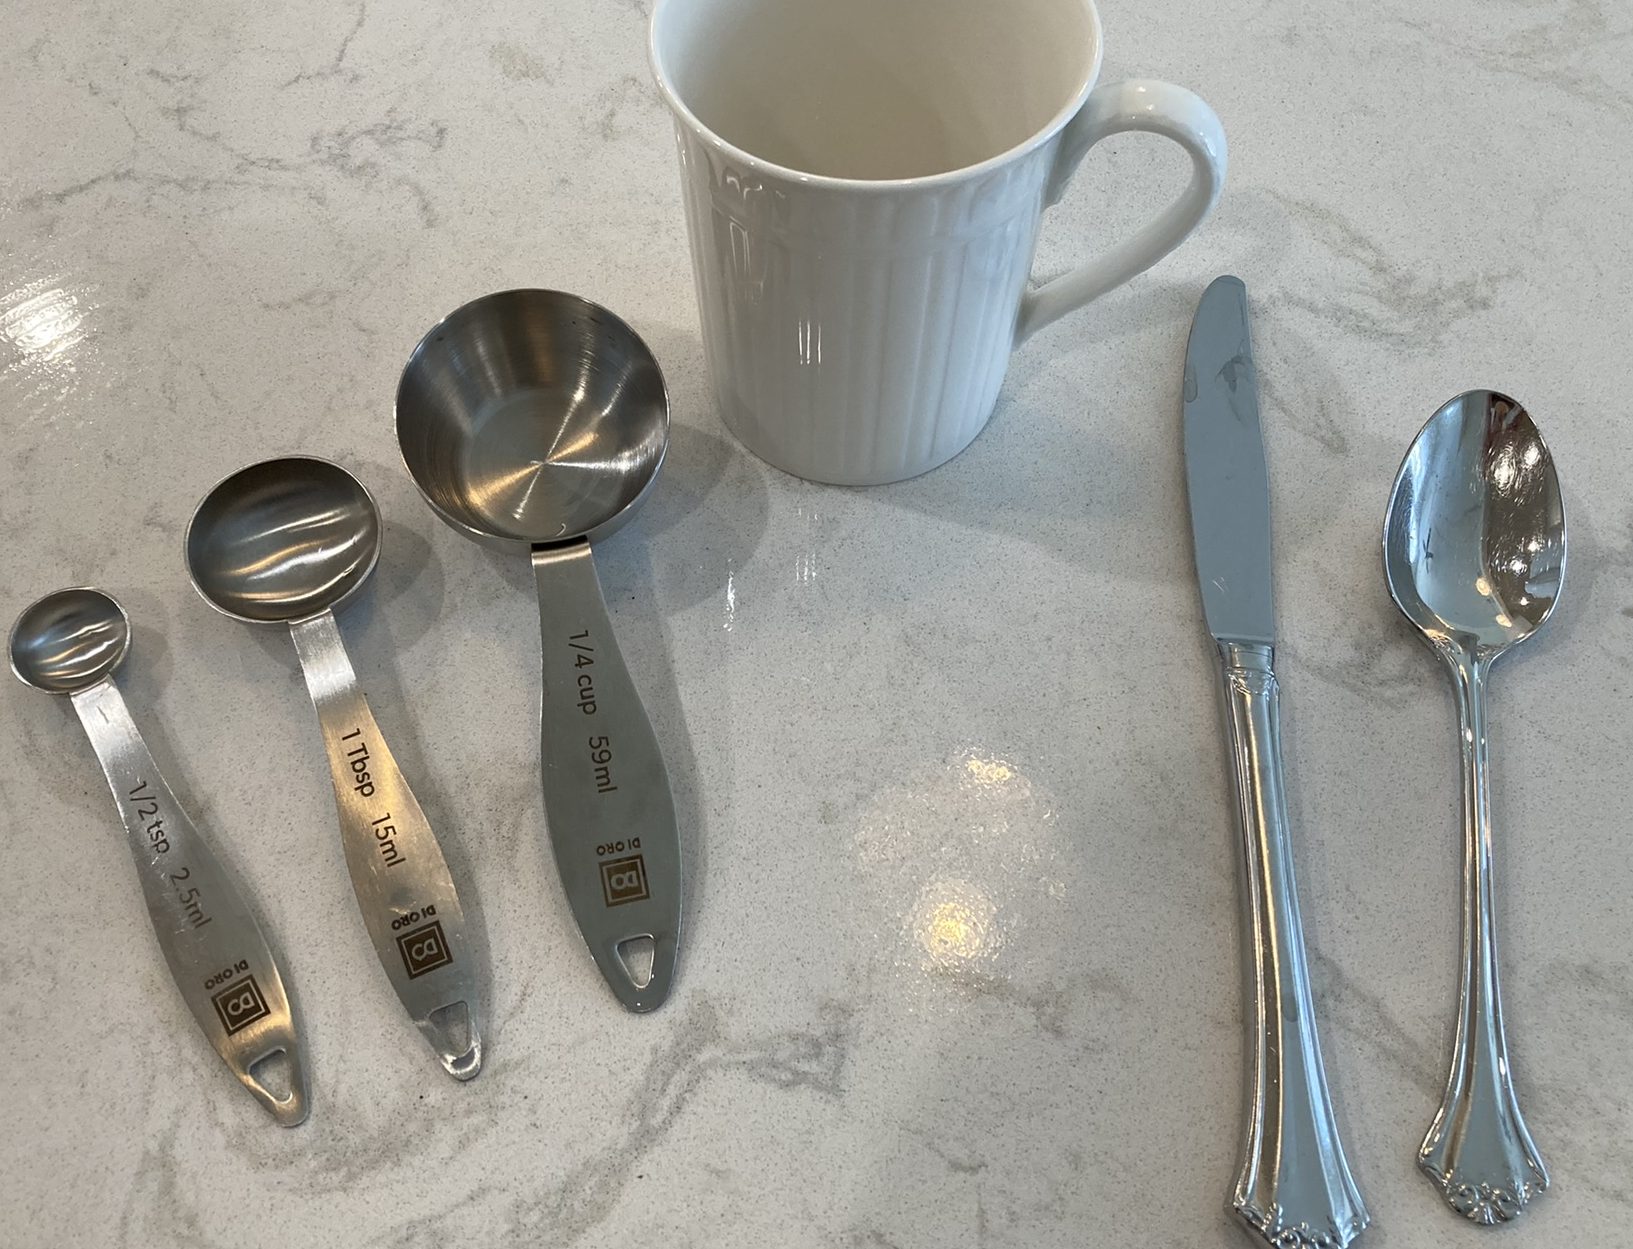 measuring spoons and mug